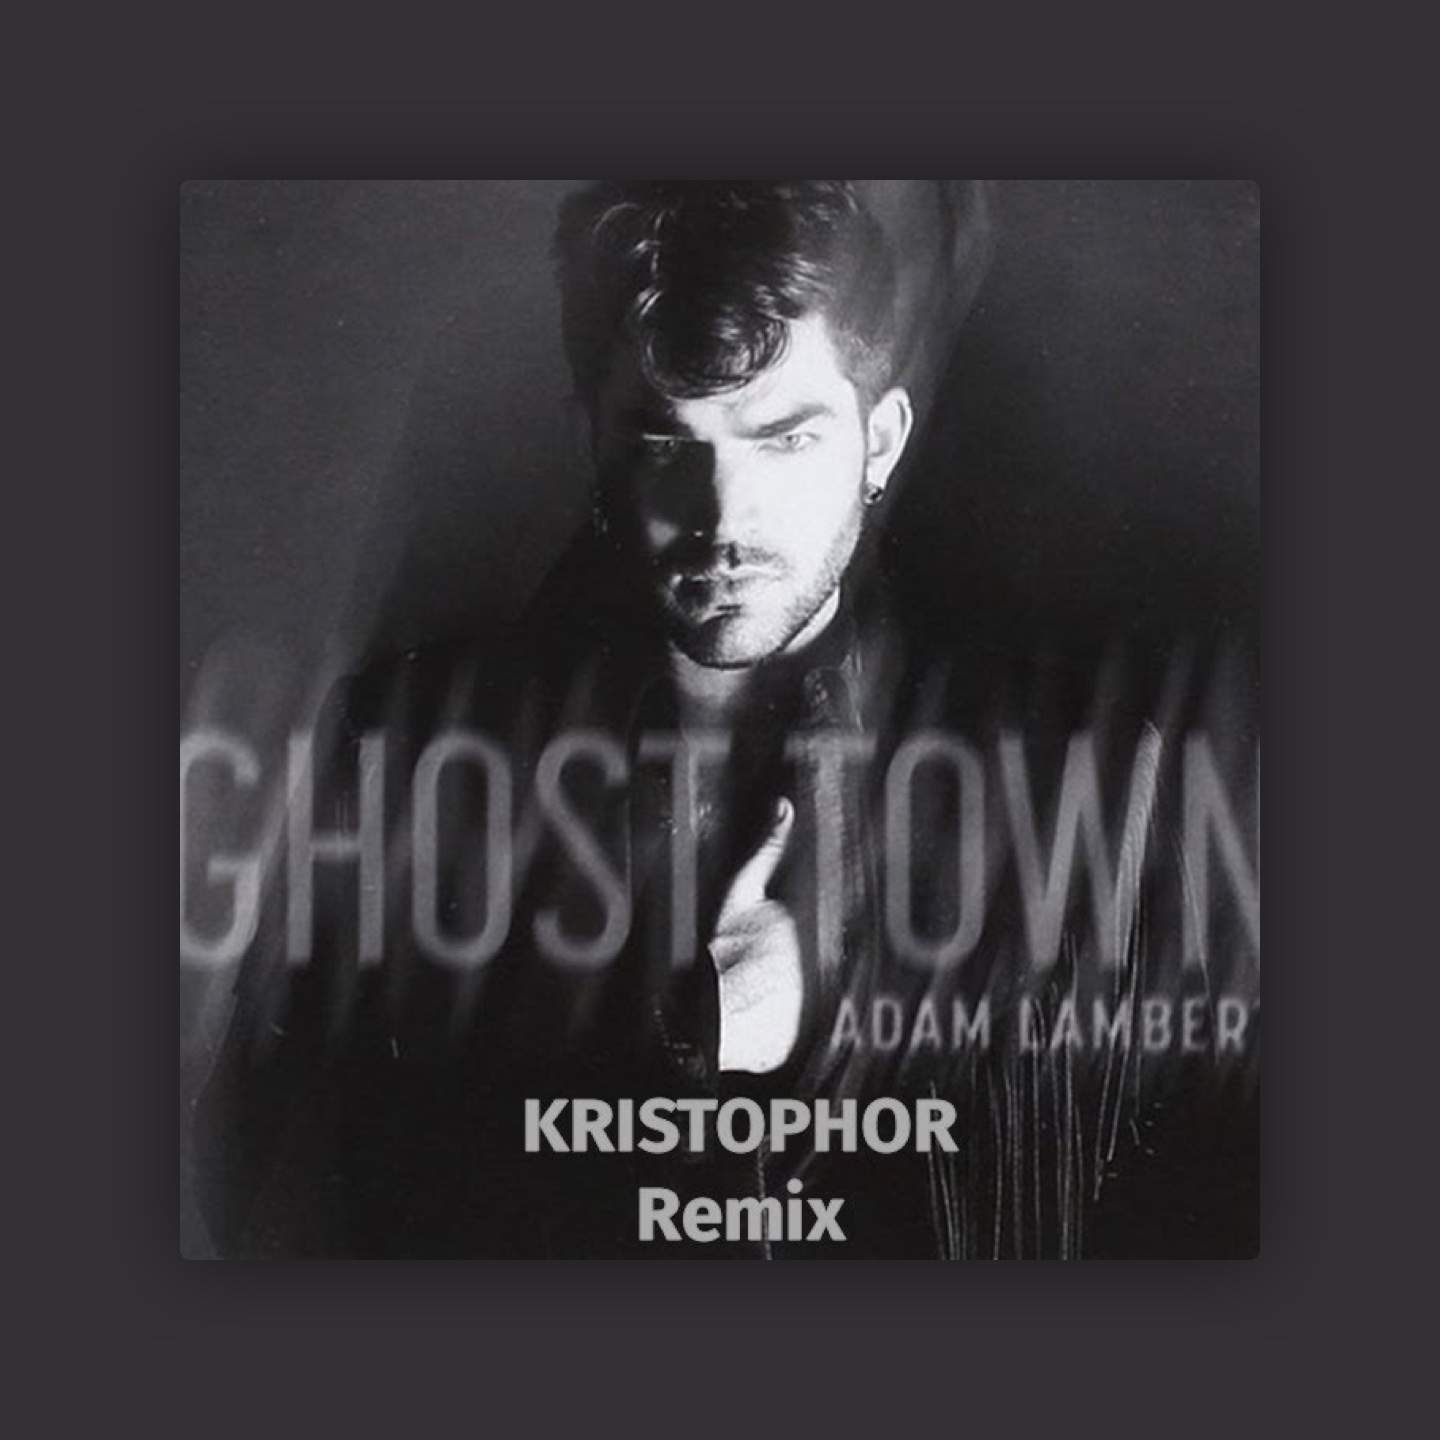 Ghost Town feat. Adam Lambert (Kristophor Remix) -
                    Luxe radio